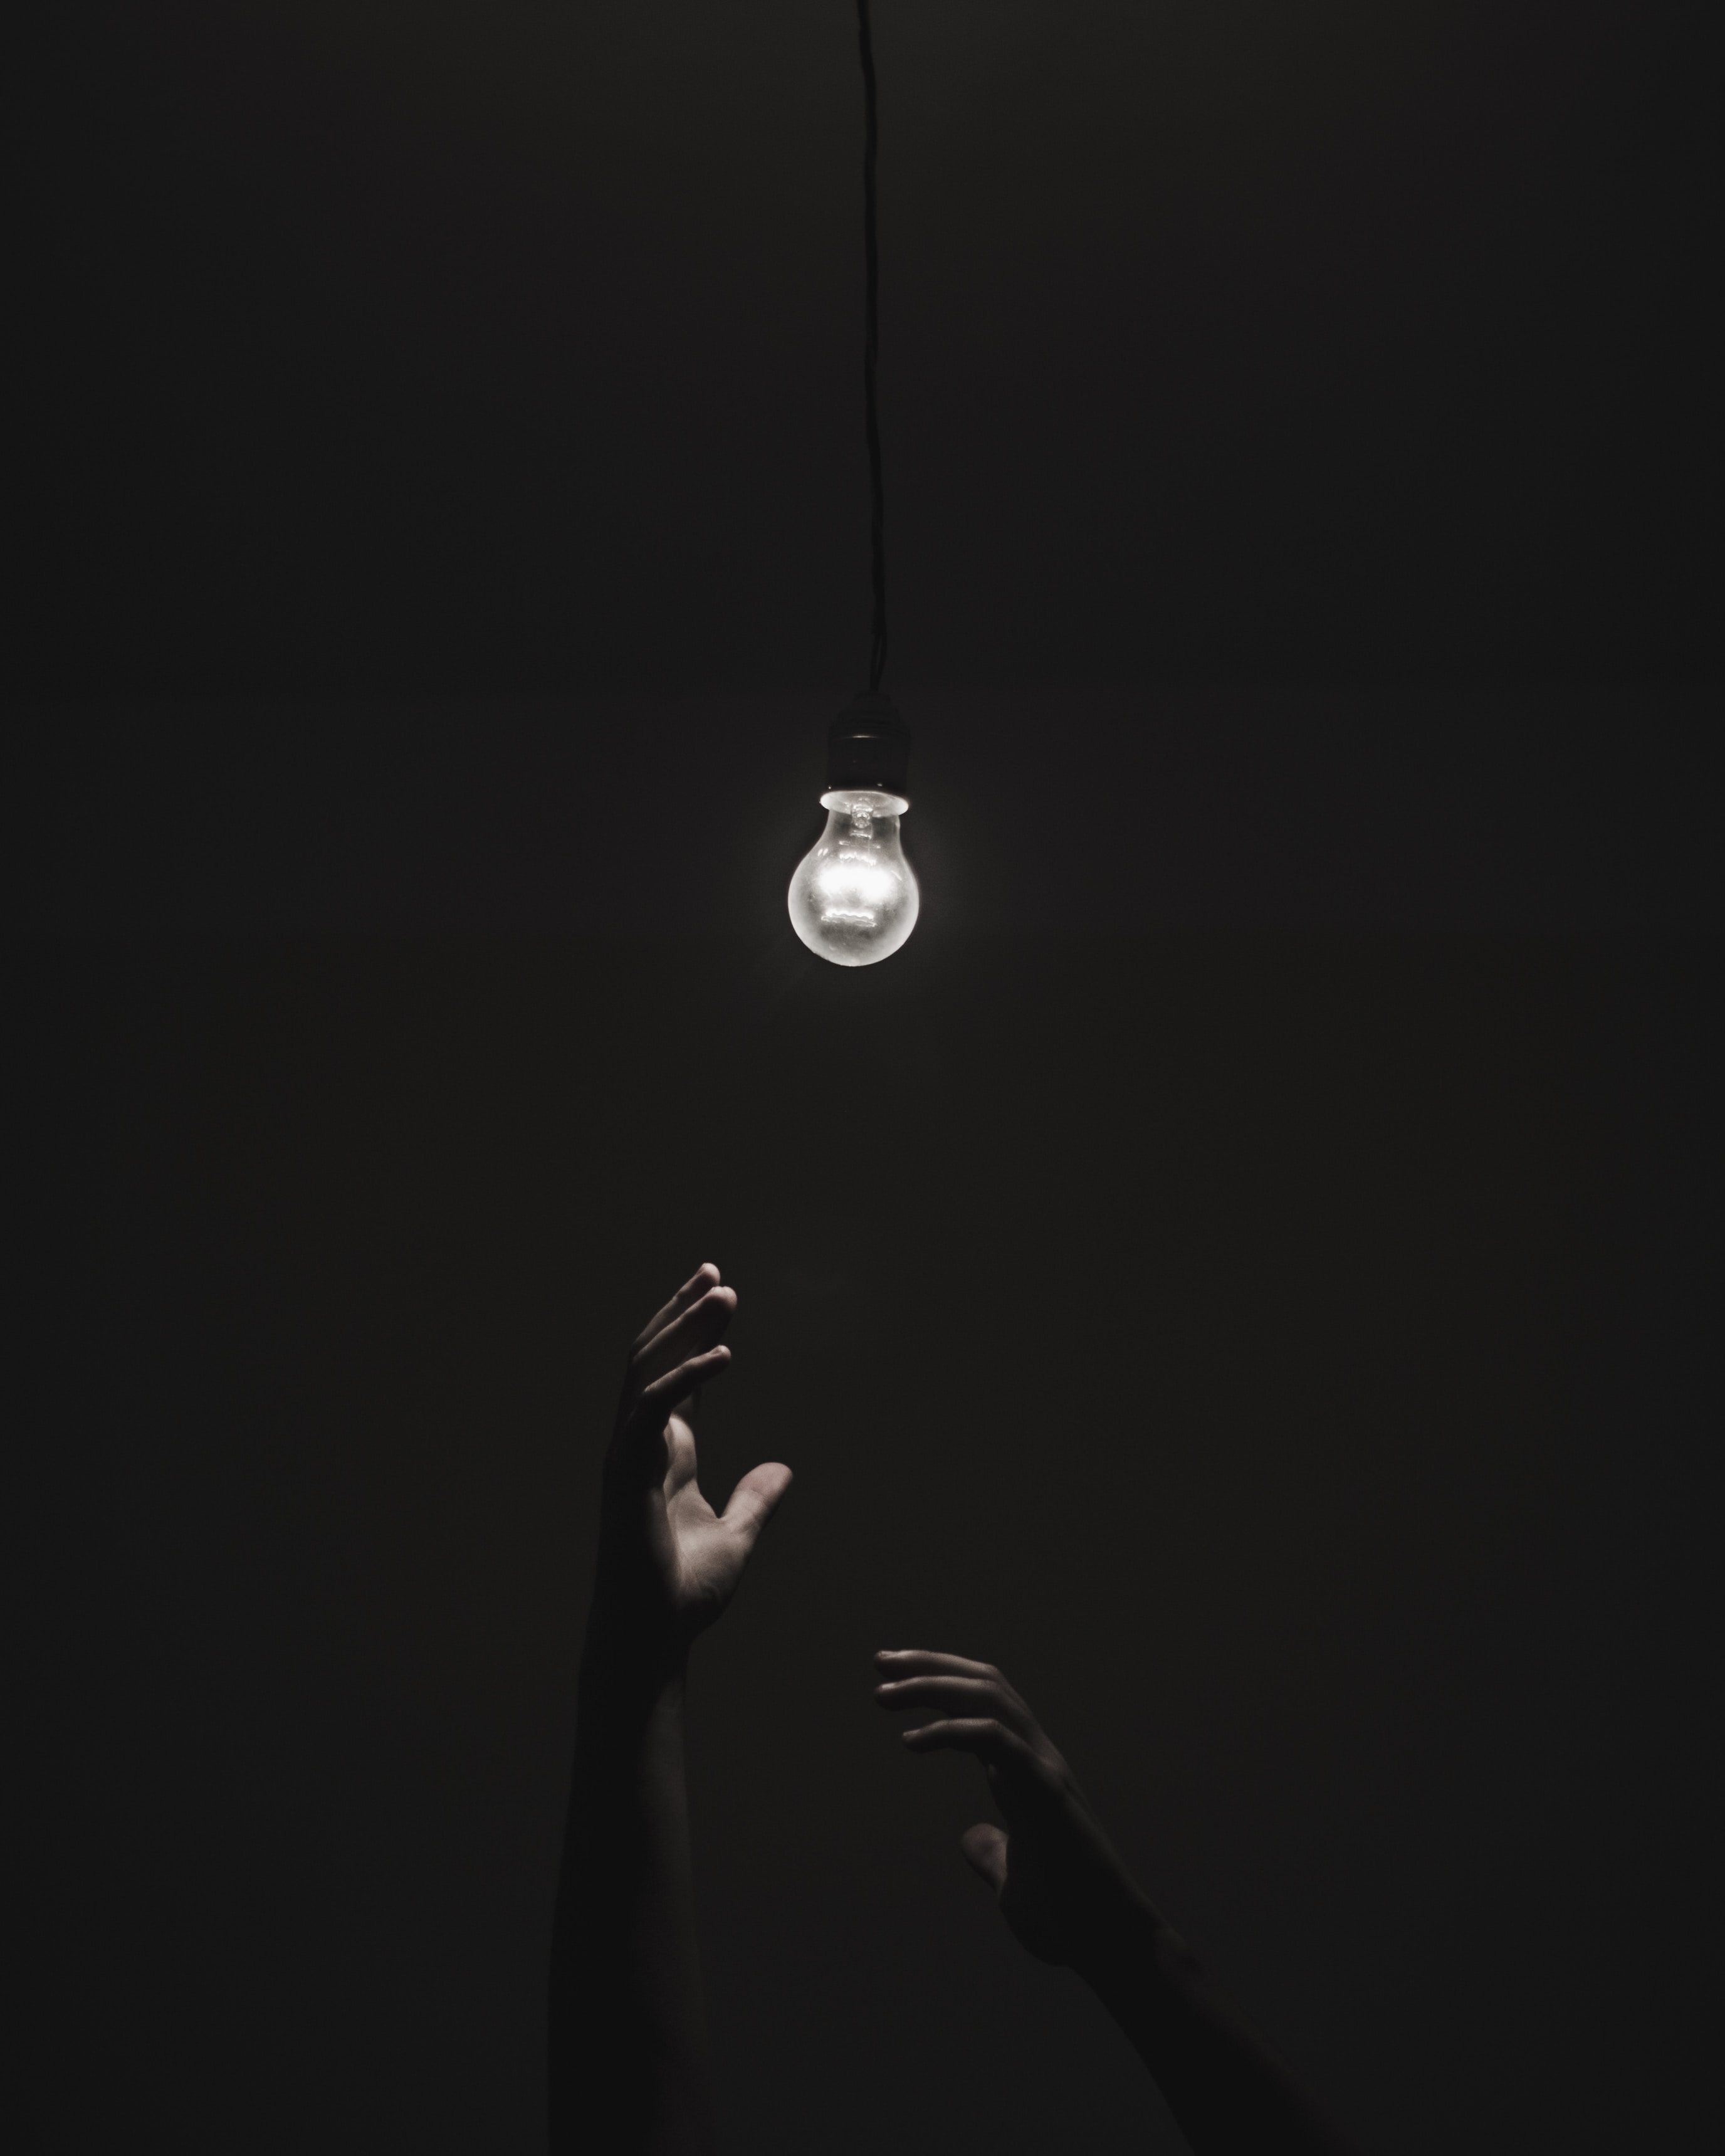 illumination, lighting, black, dark, hands, light bulb